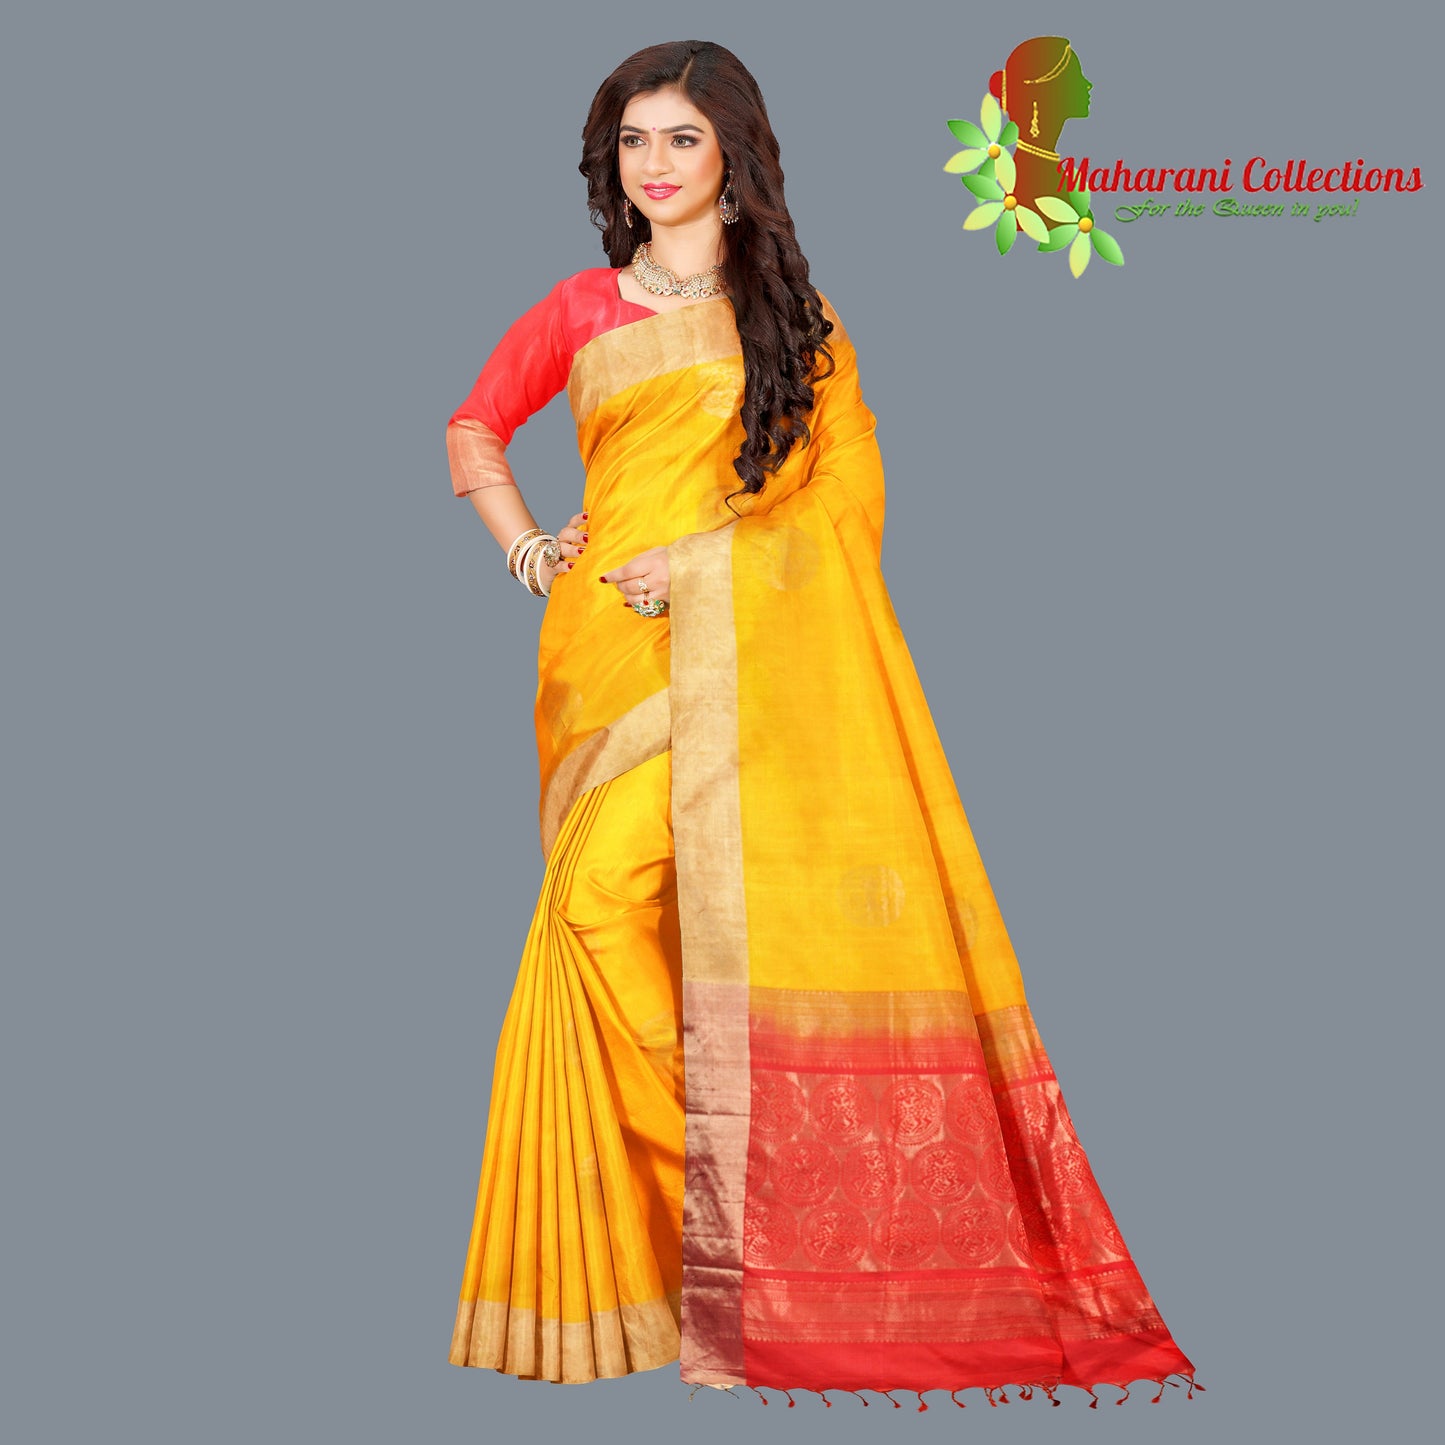 Maharani's Pure Handloom Kanjivaram Silk Saree - Yellow with Red Pallu and Golden Zari Border